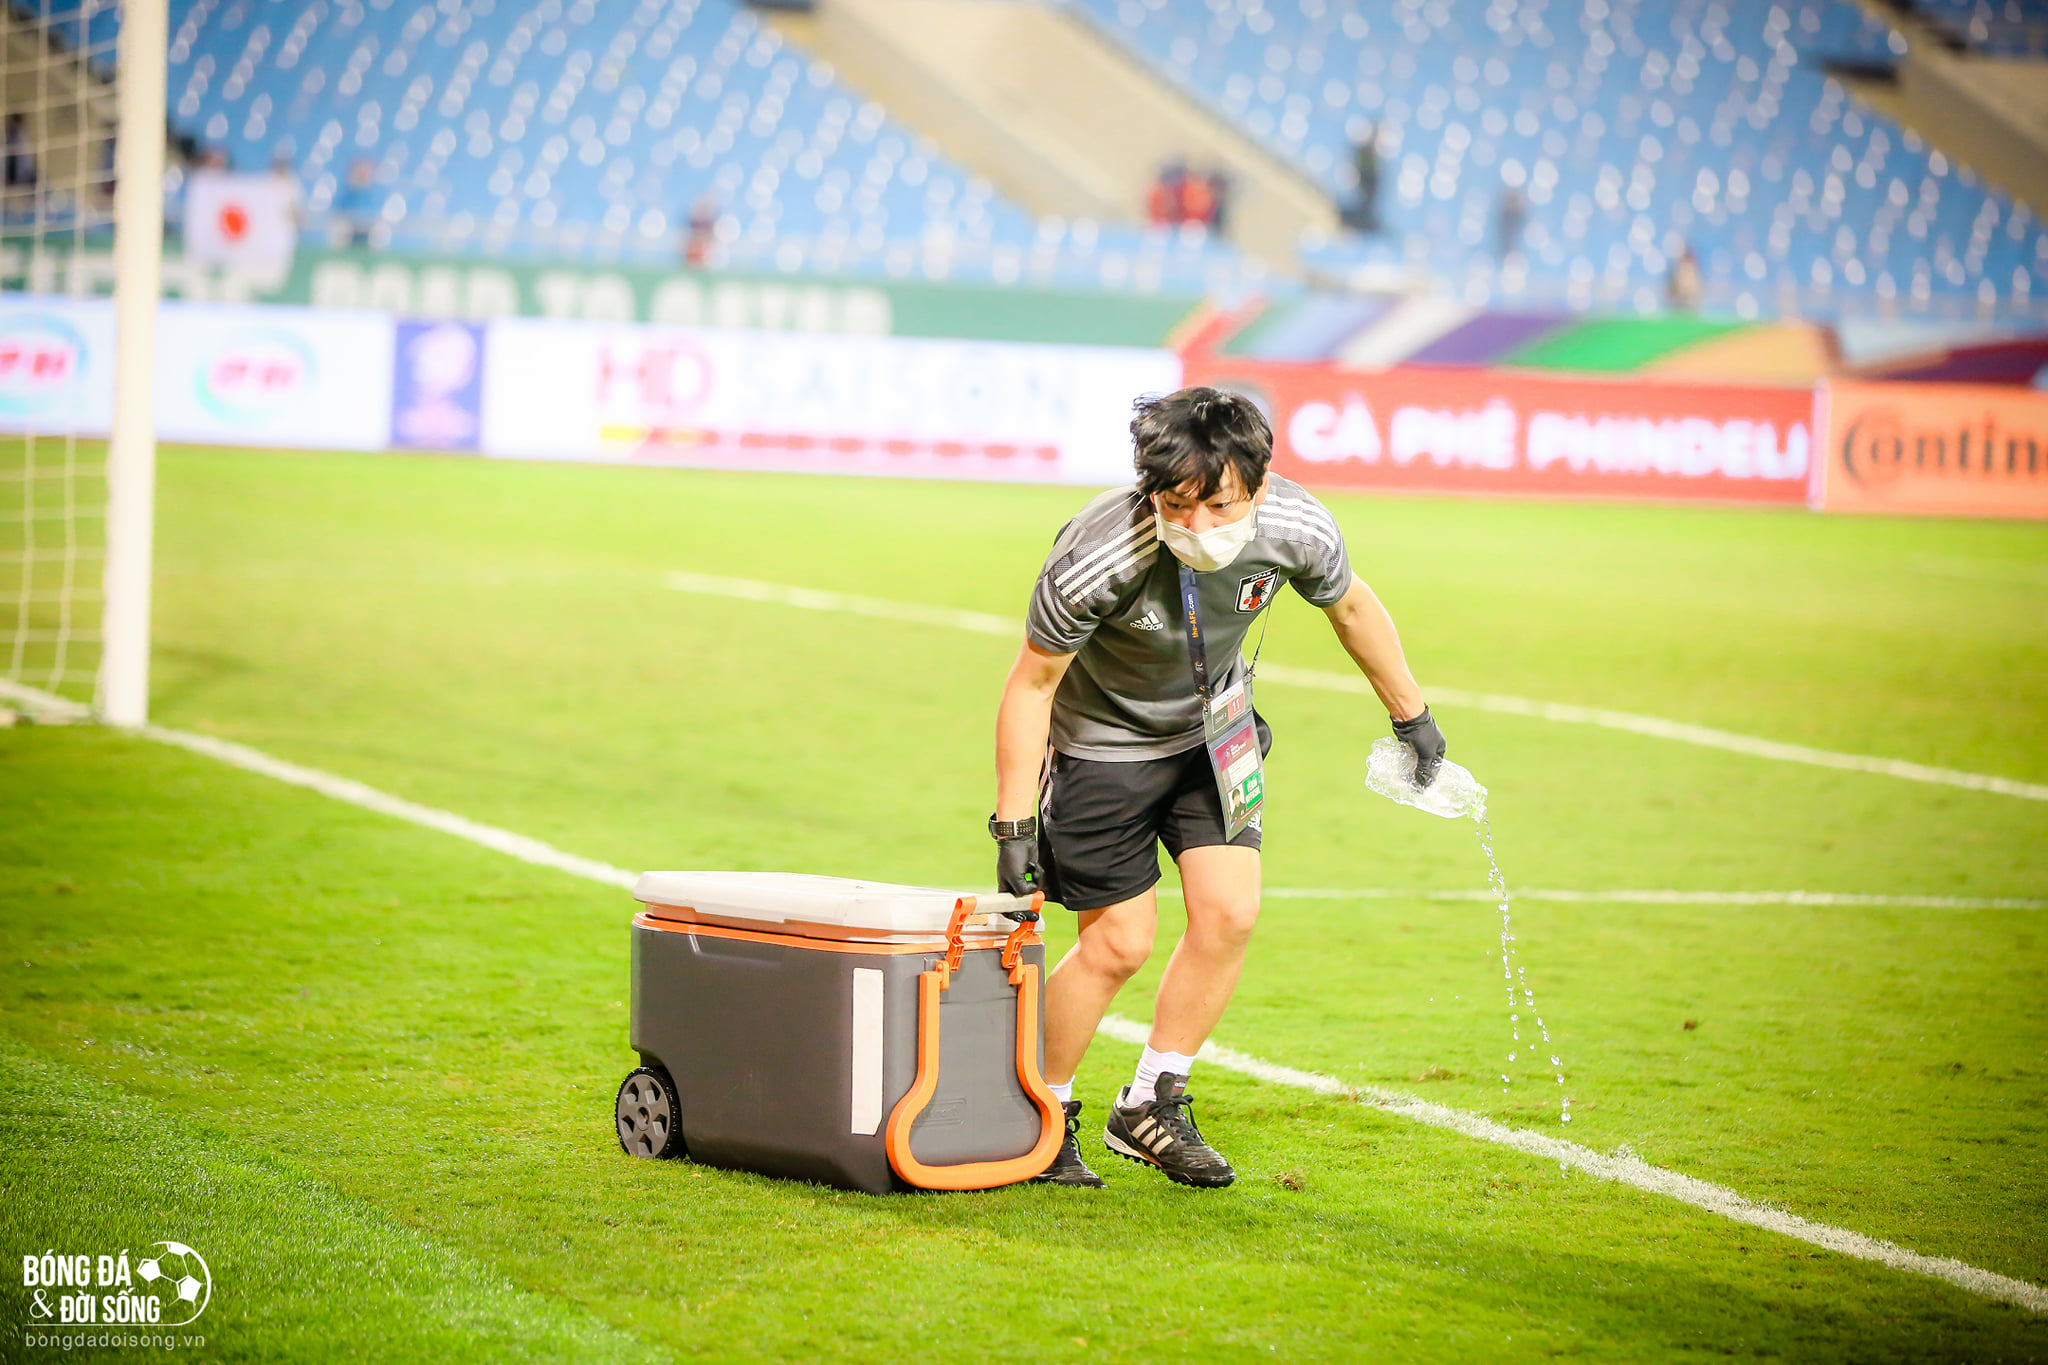 Hành động đẹp: Một thành viên của ĐT Nhật Bản đã đi quanh sân cỏ nhặt hết chai nước mà hai đội bỏ sót sau trận đấu - ảnh 3